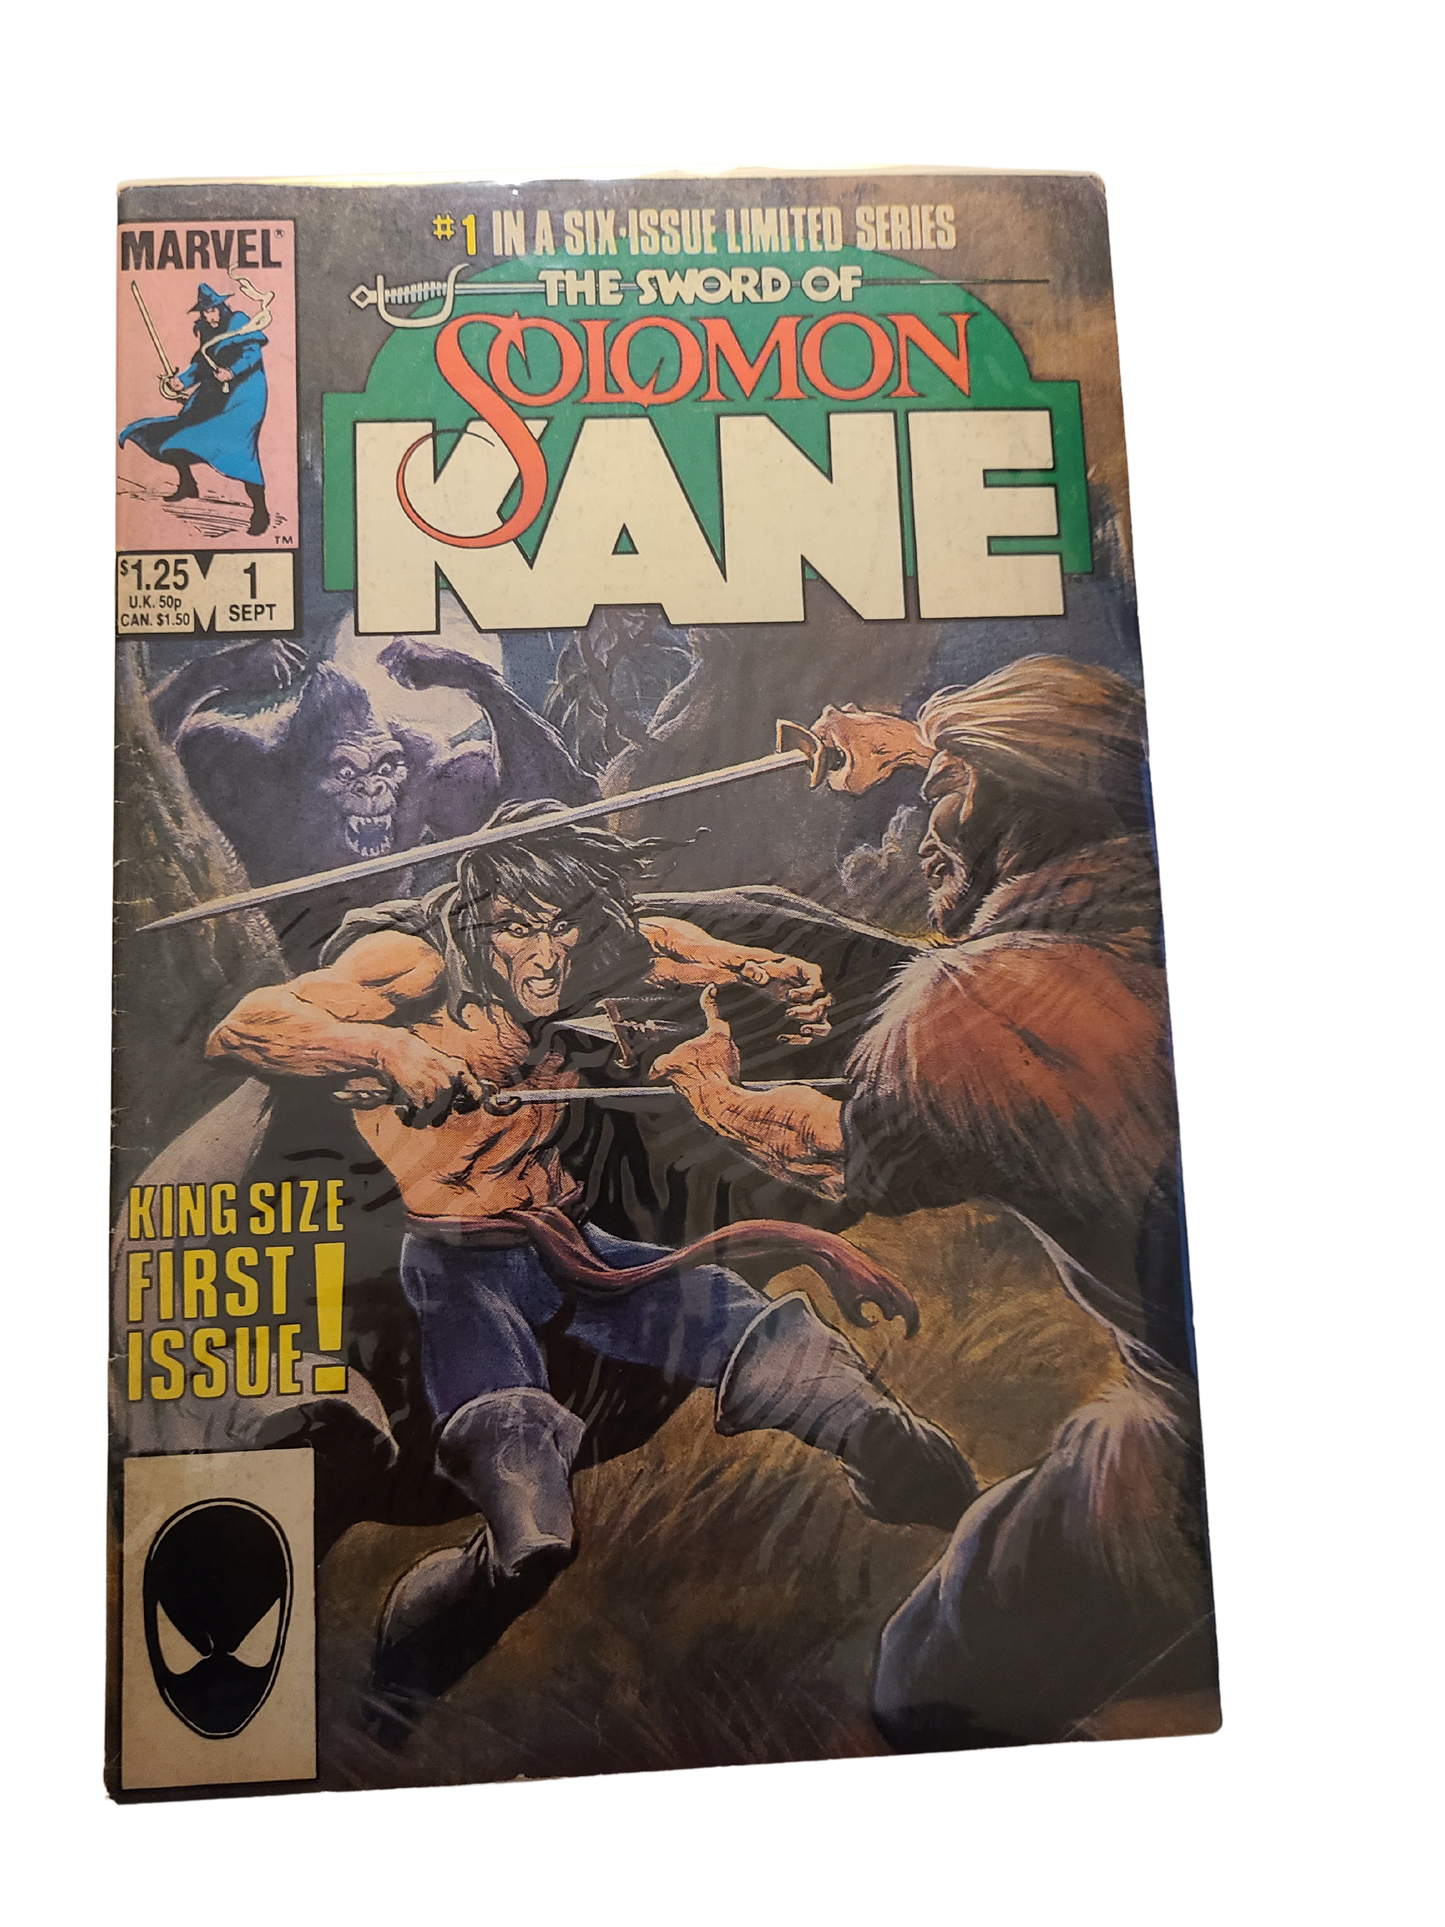 The Sword of Solomon Kane #1